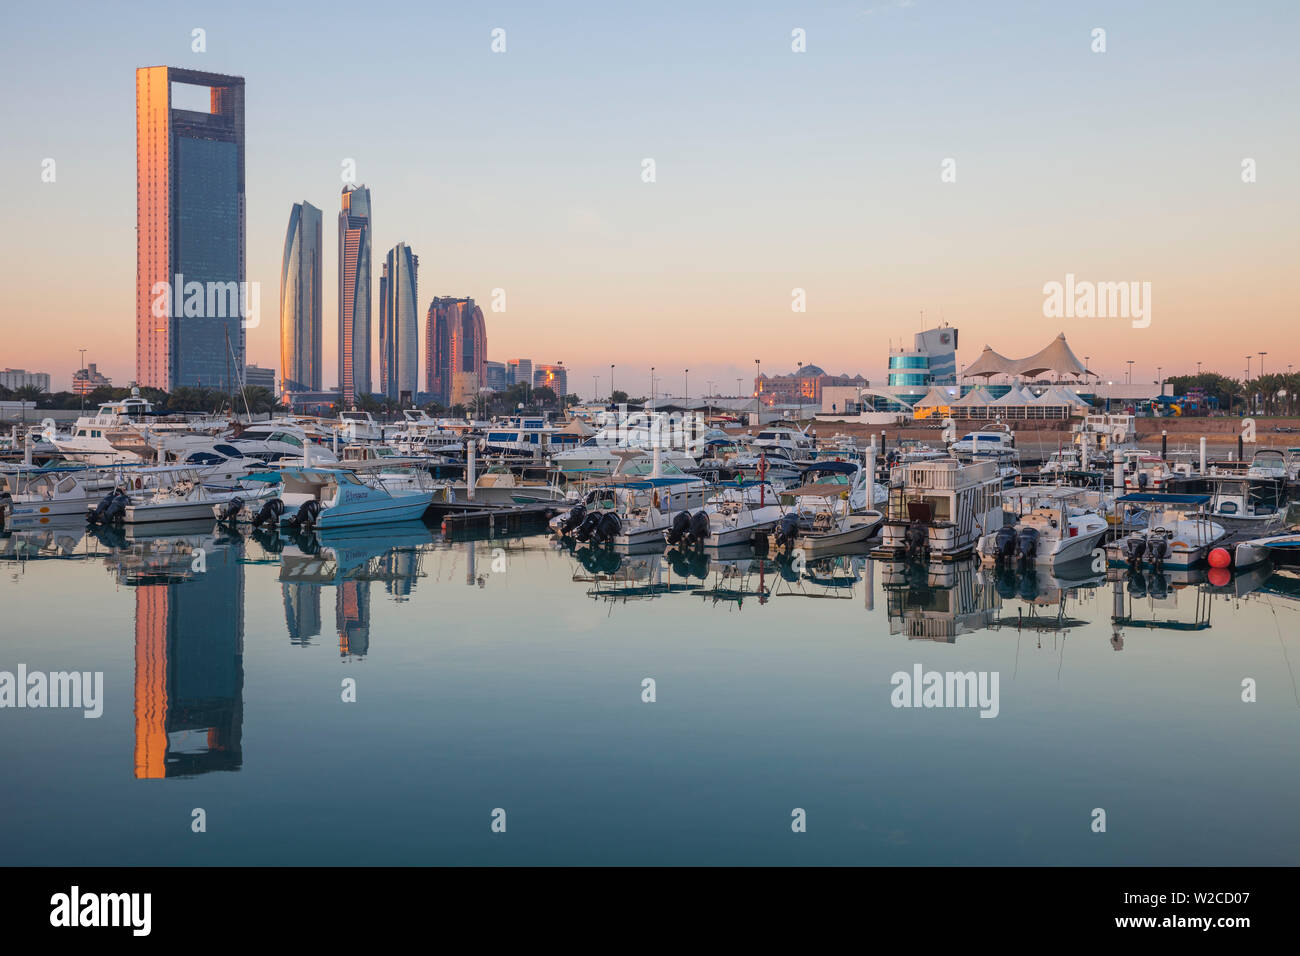 Die Vereinigten Arabischen Emirate, Abu Dhabi, Blick auf die Marina und die Skyline der Stadt in Richtung Abu Dhabi National Oil Company Headquarters suchen, Etihad Towers, der Royal Rose Hotel und auf der rechten Seite der Abu Dhabi International Marine Sports Club Stockfoto